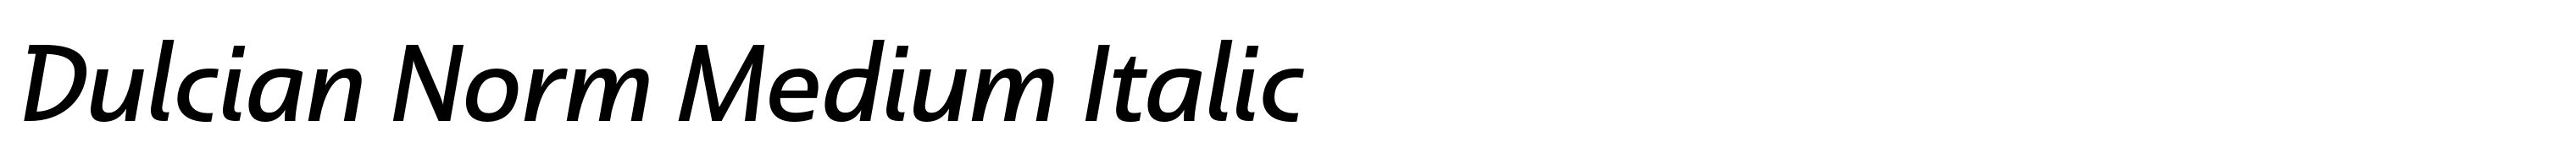 Dulcian Norm Medium Italic